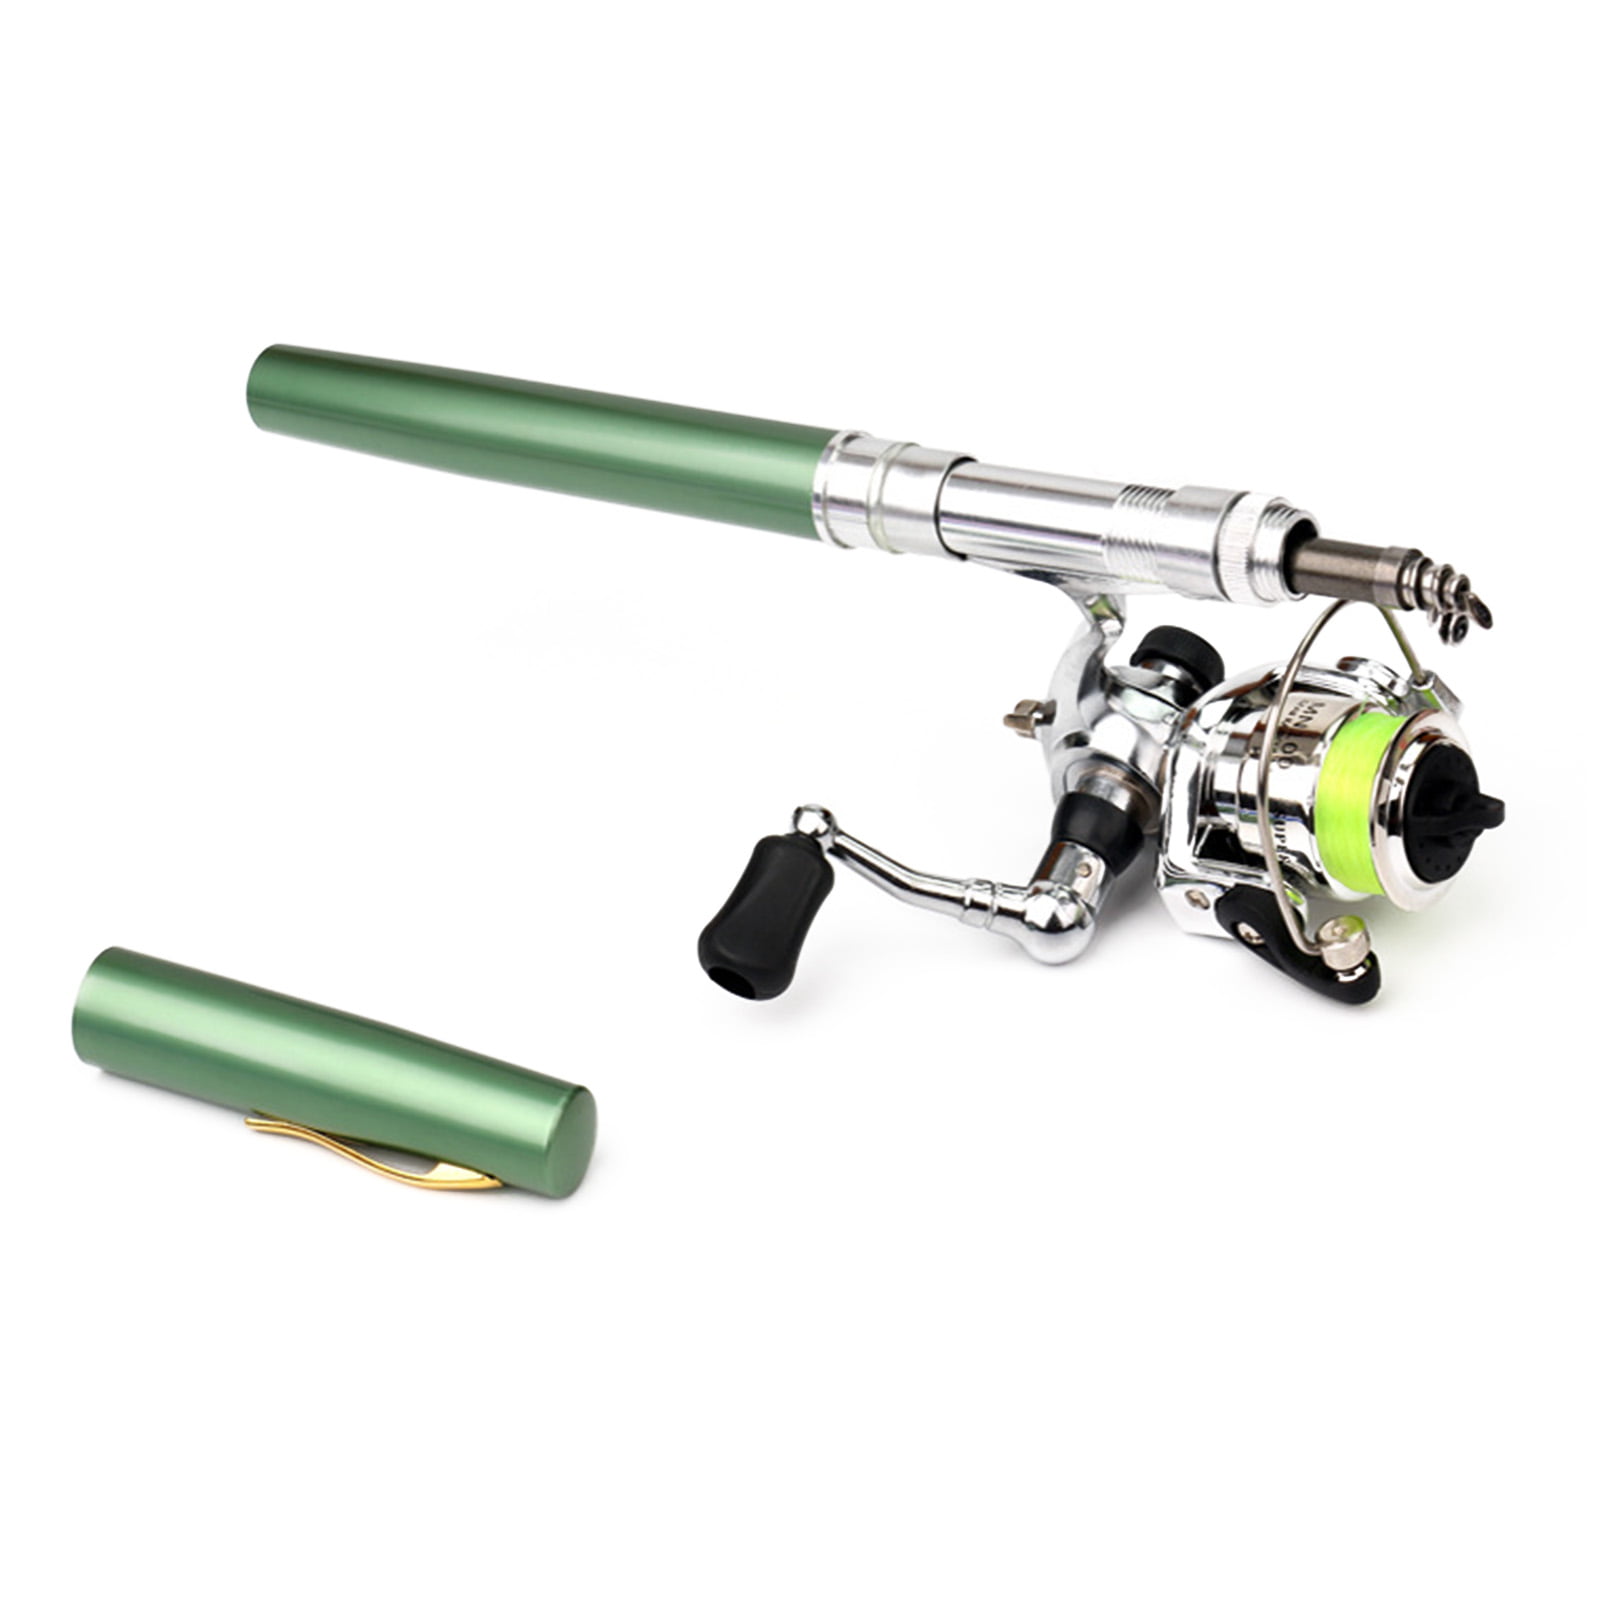 Pen Shape Fishing Rod With Reel Wheel – Jo-products